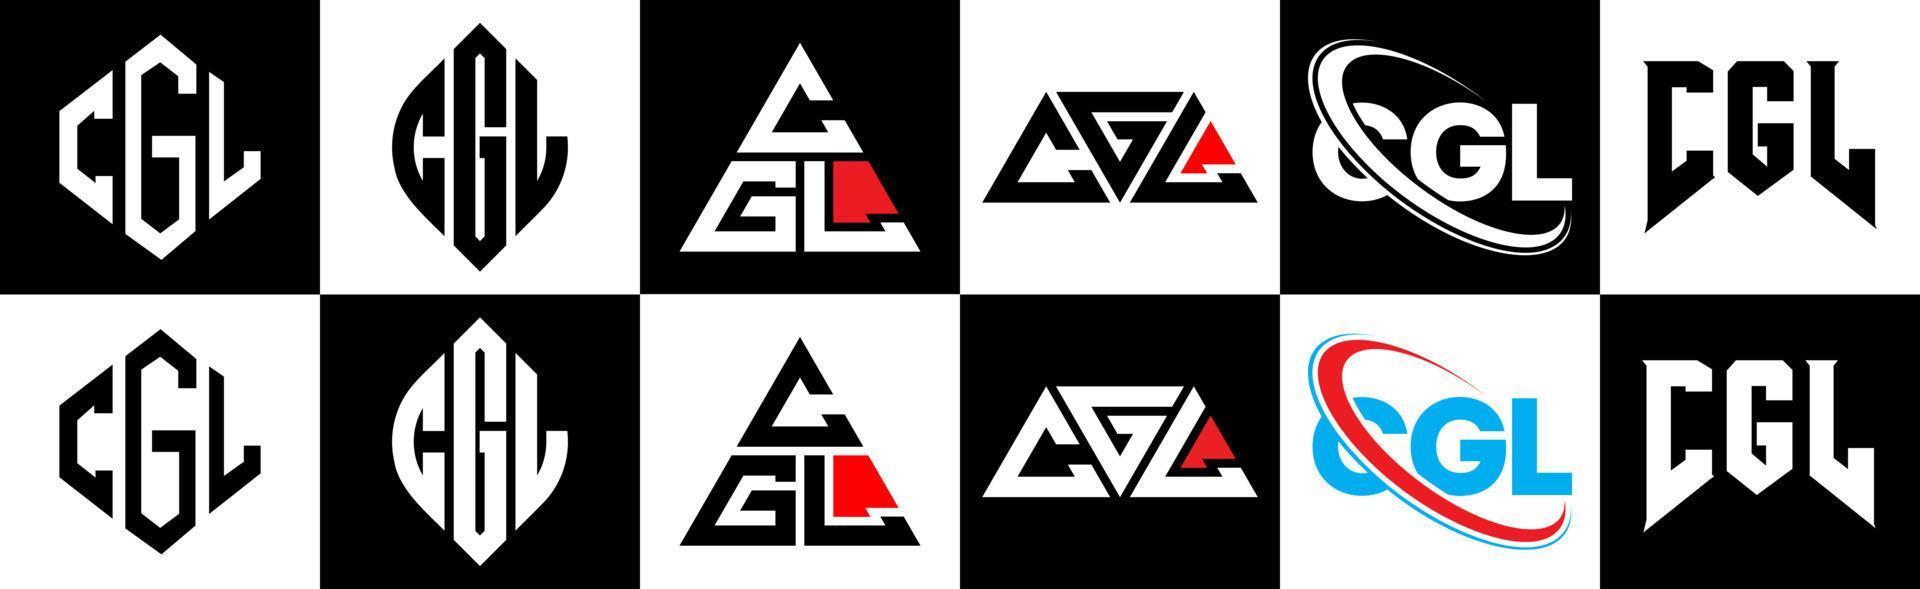 cgl brief logo ontwerp in zes stijl. cgl veelhoek, cirkel, driehoek, zeshoek, vlak en gemakkelijk stijl met zwart en wit kleur variatie brief logo reeks in een tekengebied. cgl minimalistische en klassiek logo vector